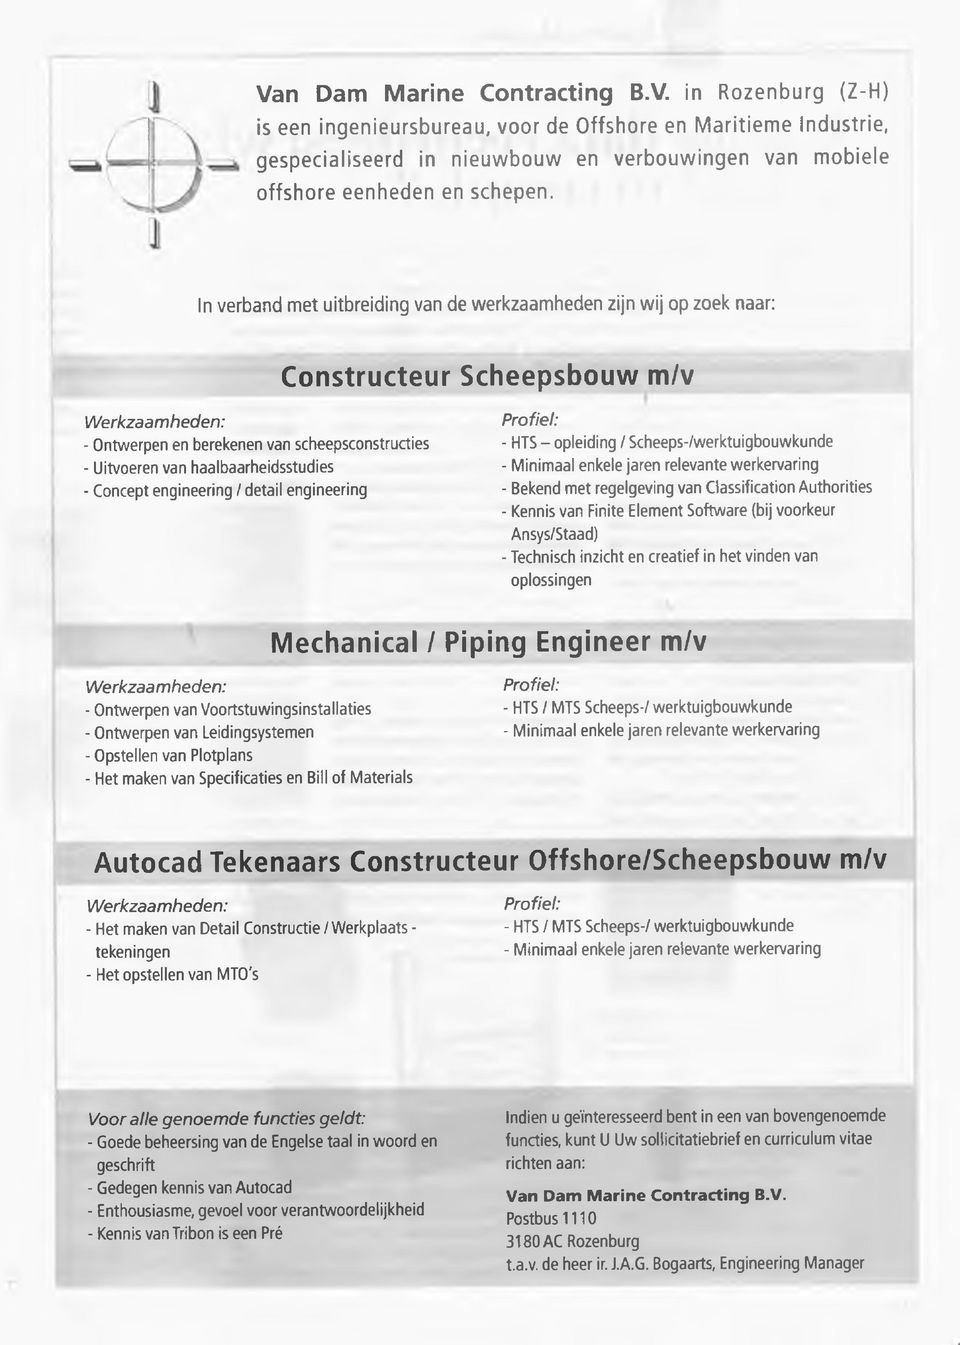 haalbaarheidsstudies - Concept engineering / detail engineering Profiel: - HTS - opleiding / Scheeps-/werktuigbouwkunde - Minimaal enkele jaren relevante werkervaring - Bekend m et regelgeving van